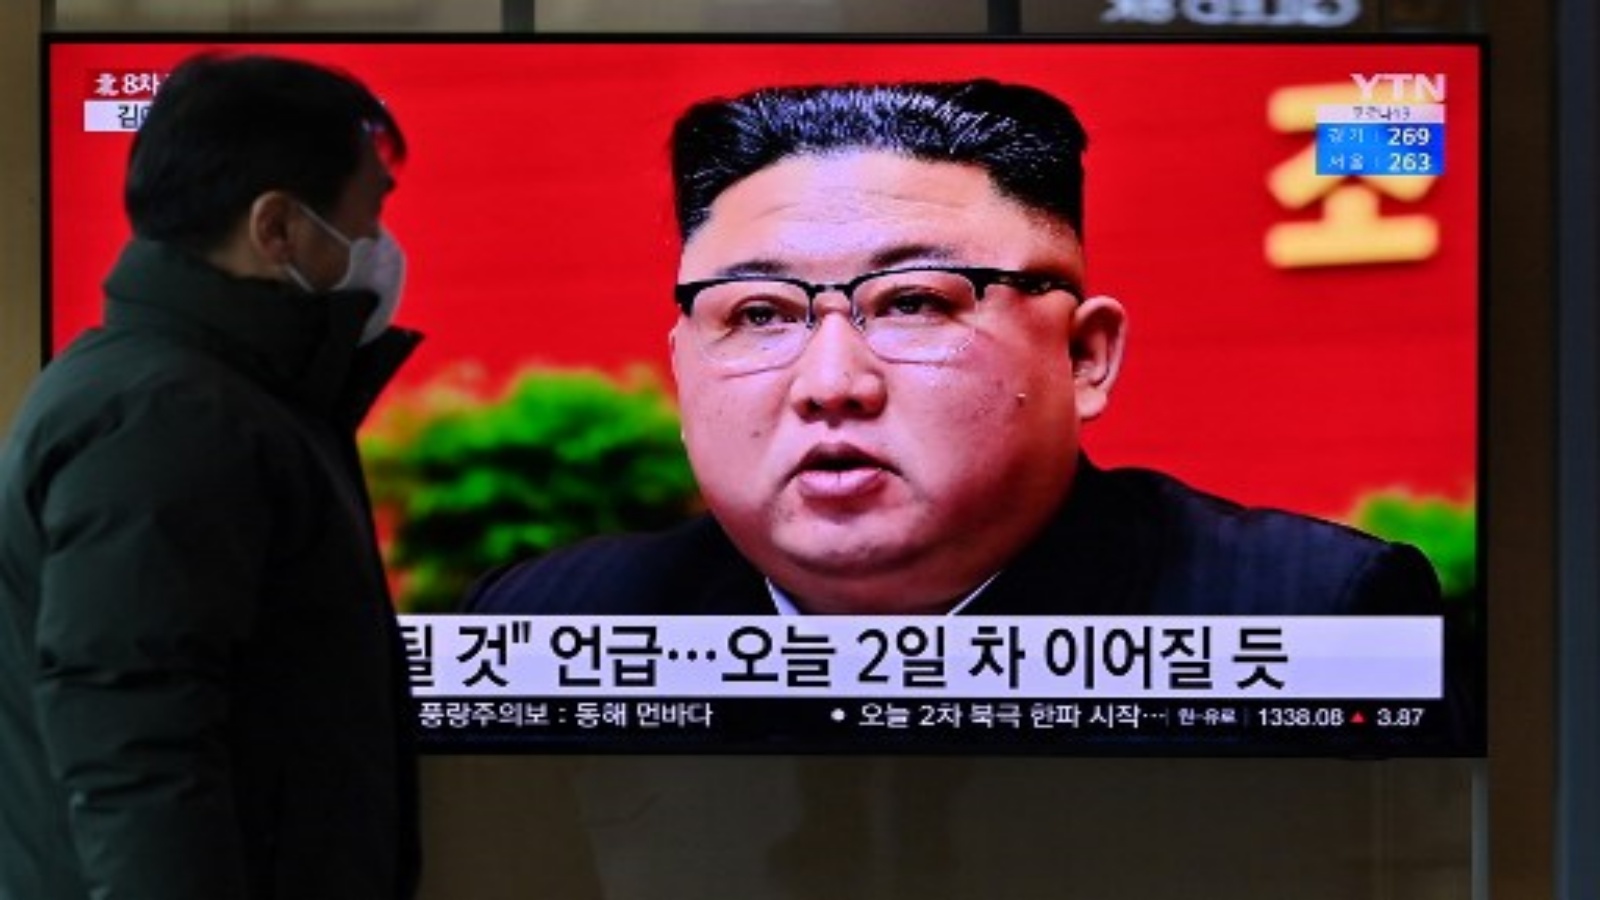 رجل يشاهد شاشة تلفزيونية تعرض لقطات إخبارية للزعيم الكوري الشمالي كيم جونغ أون أثناء حضوره المؤتمر الثامن لحزب العمال الحاكم الذي عقد في بيونغ يانغ ، في محطة سكة حديد في سيول في 6 يناير 2021.